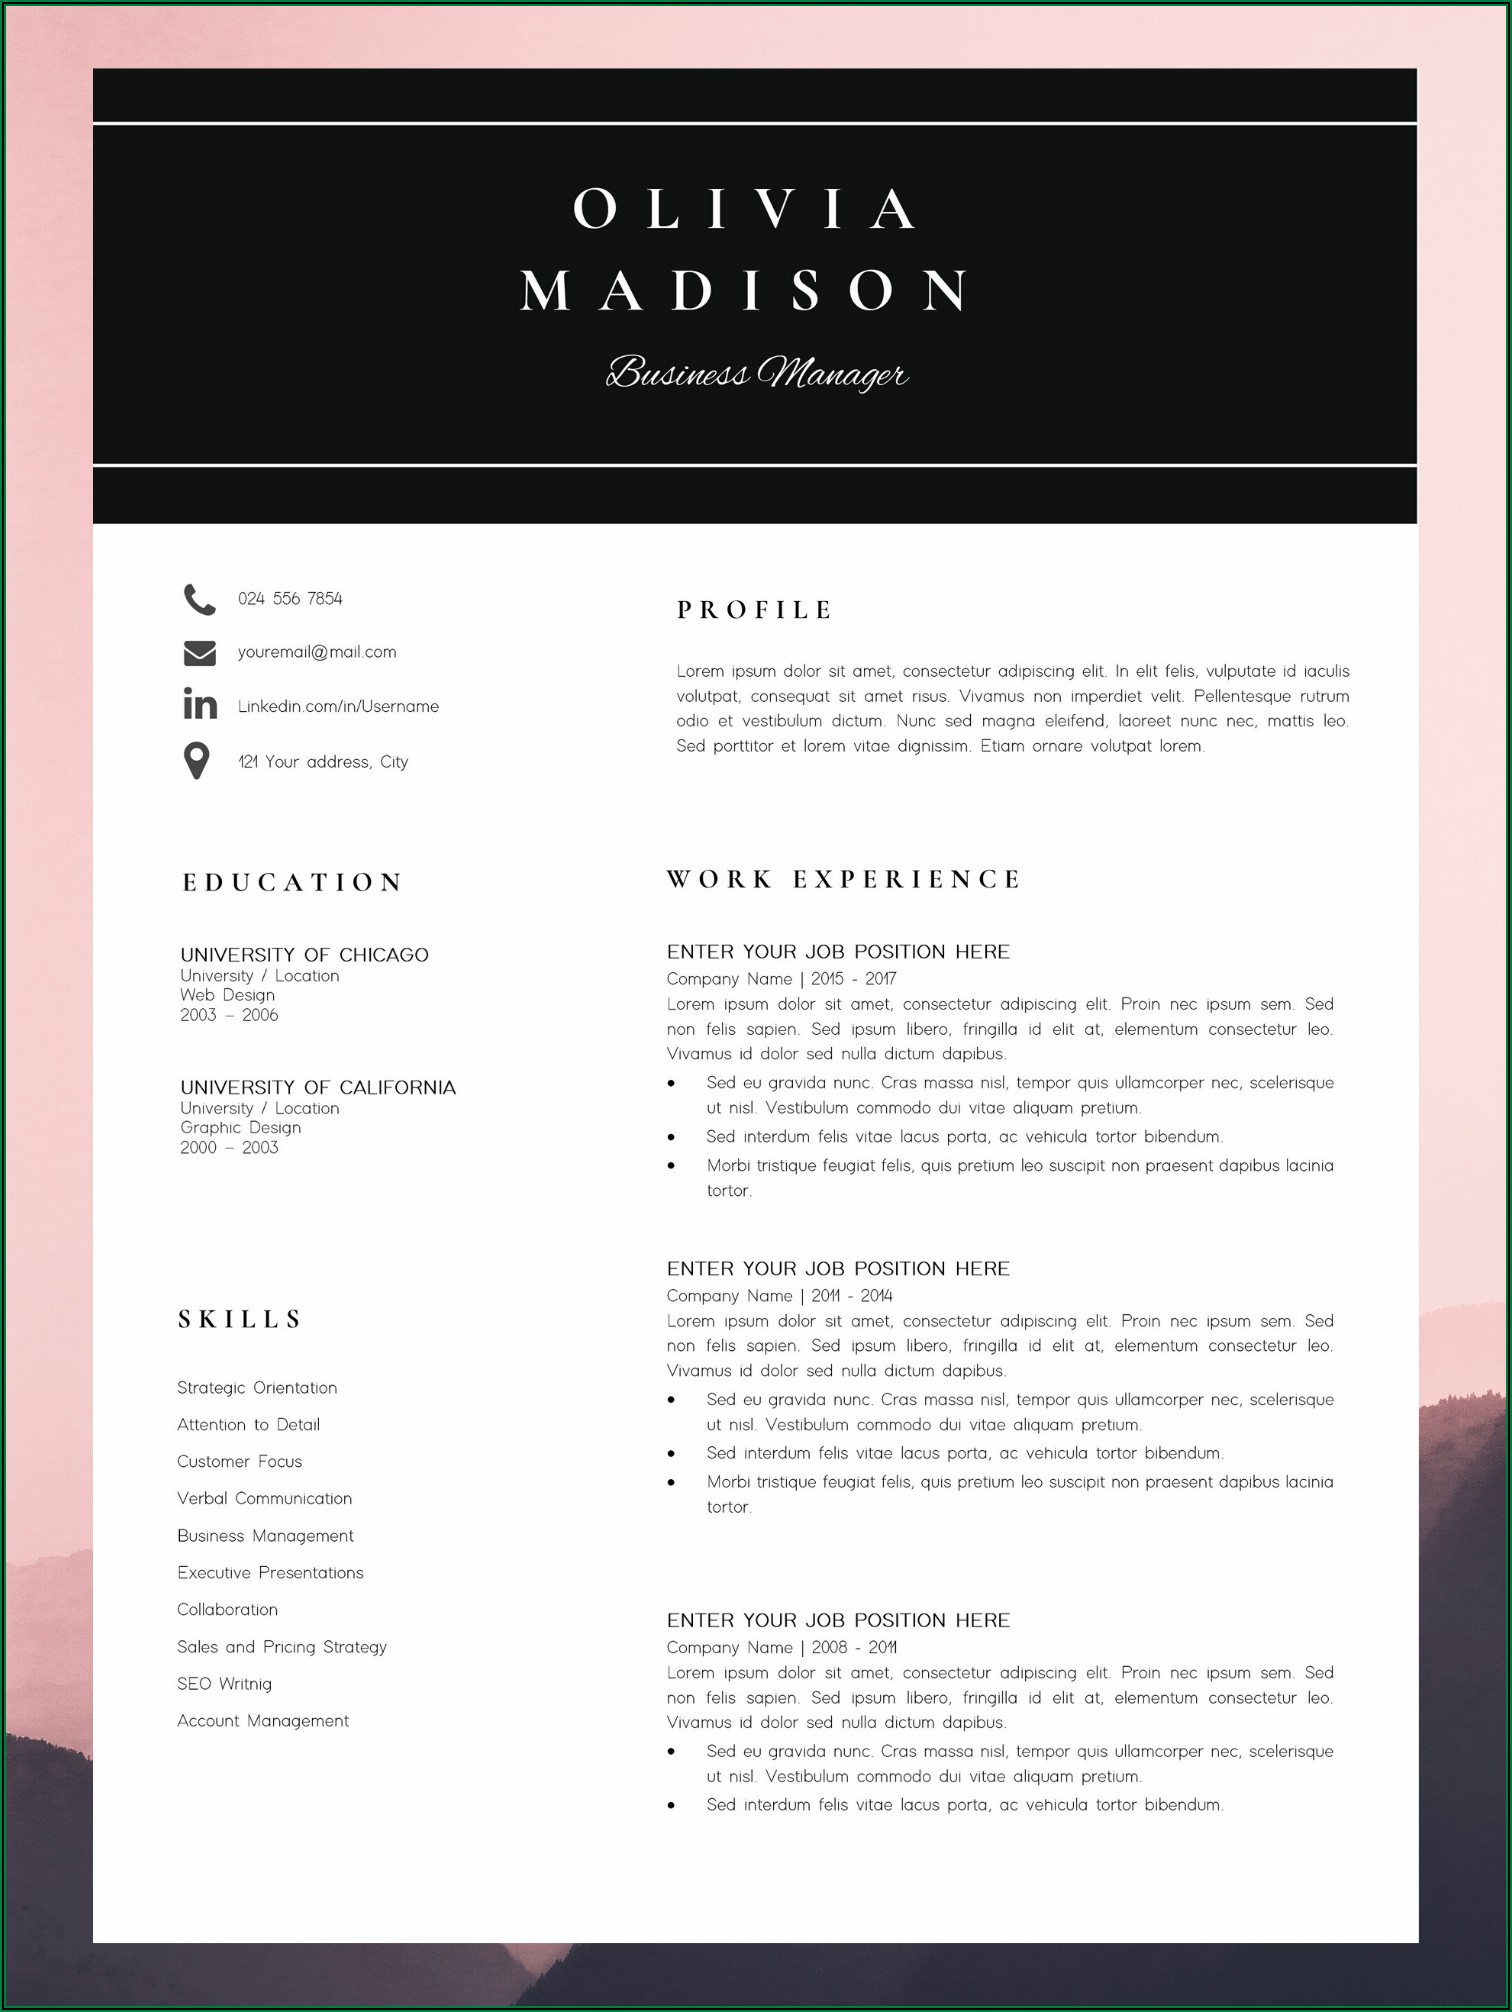 Resume Writing Madison Wi